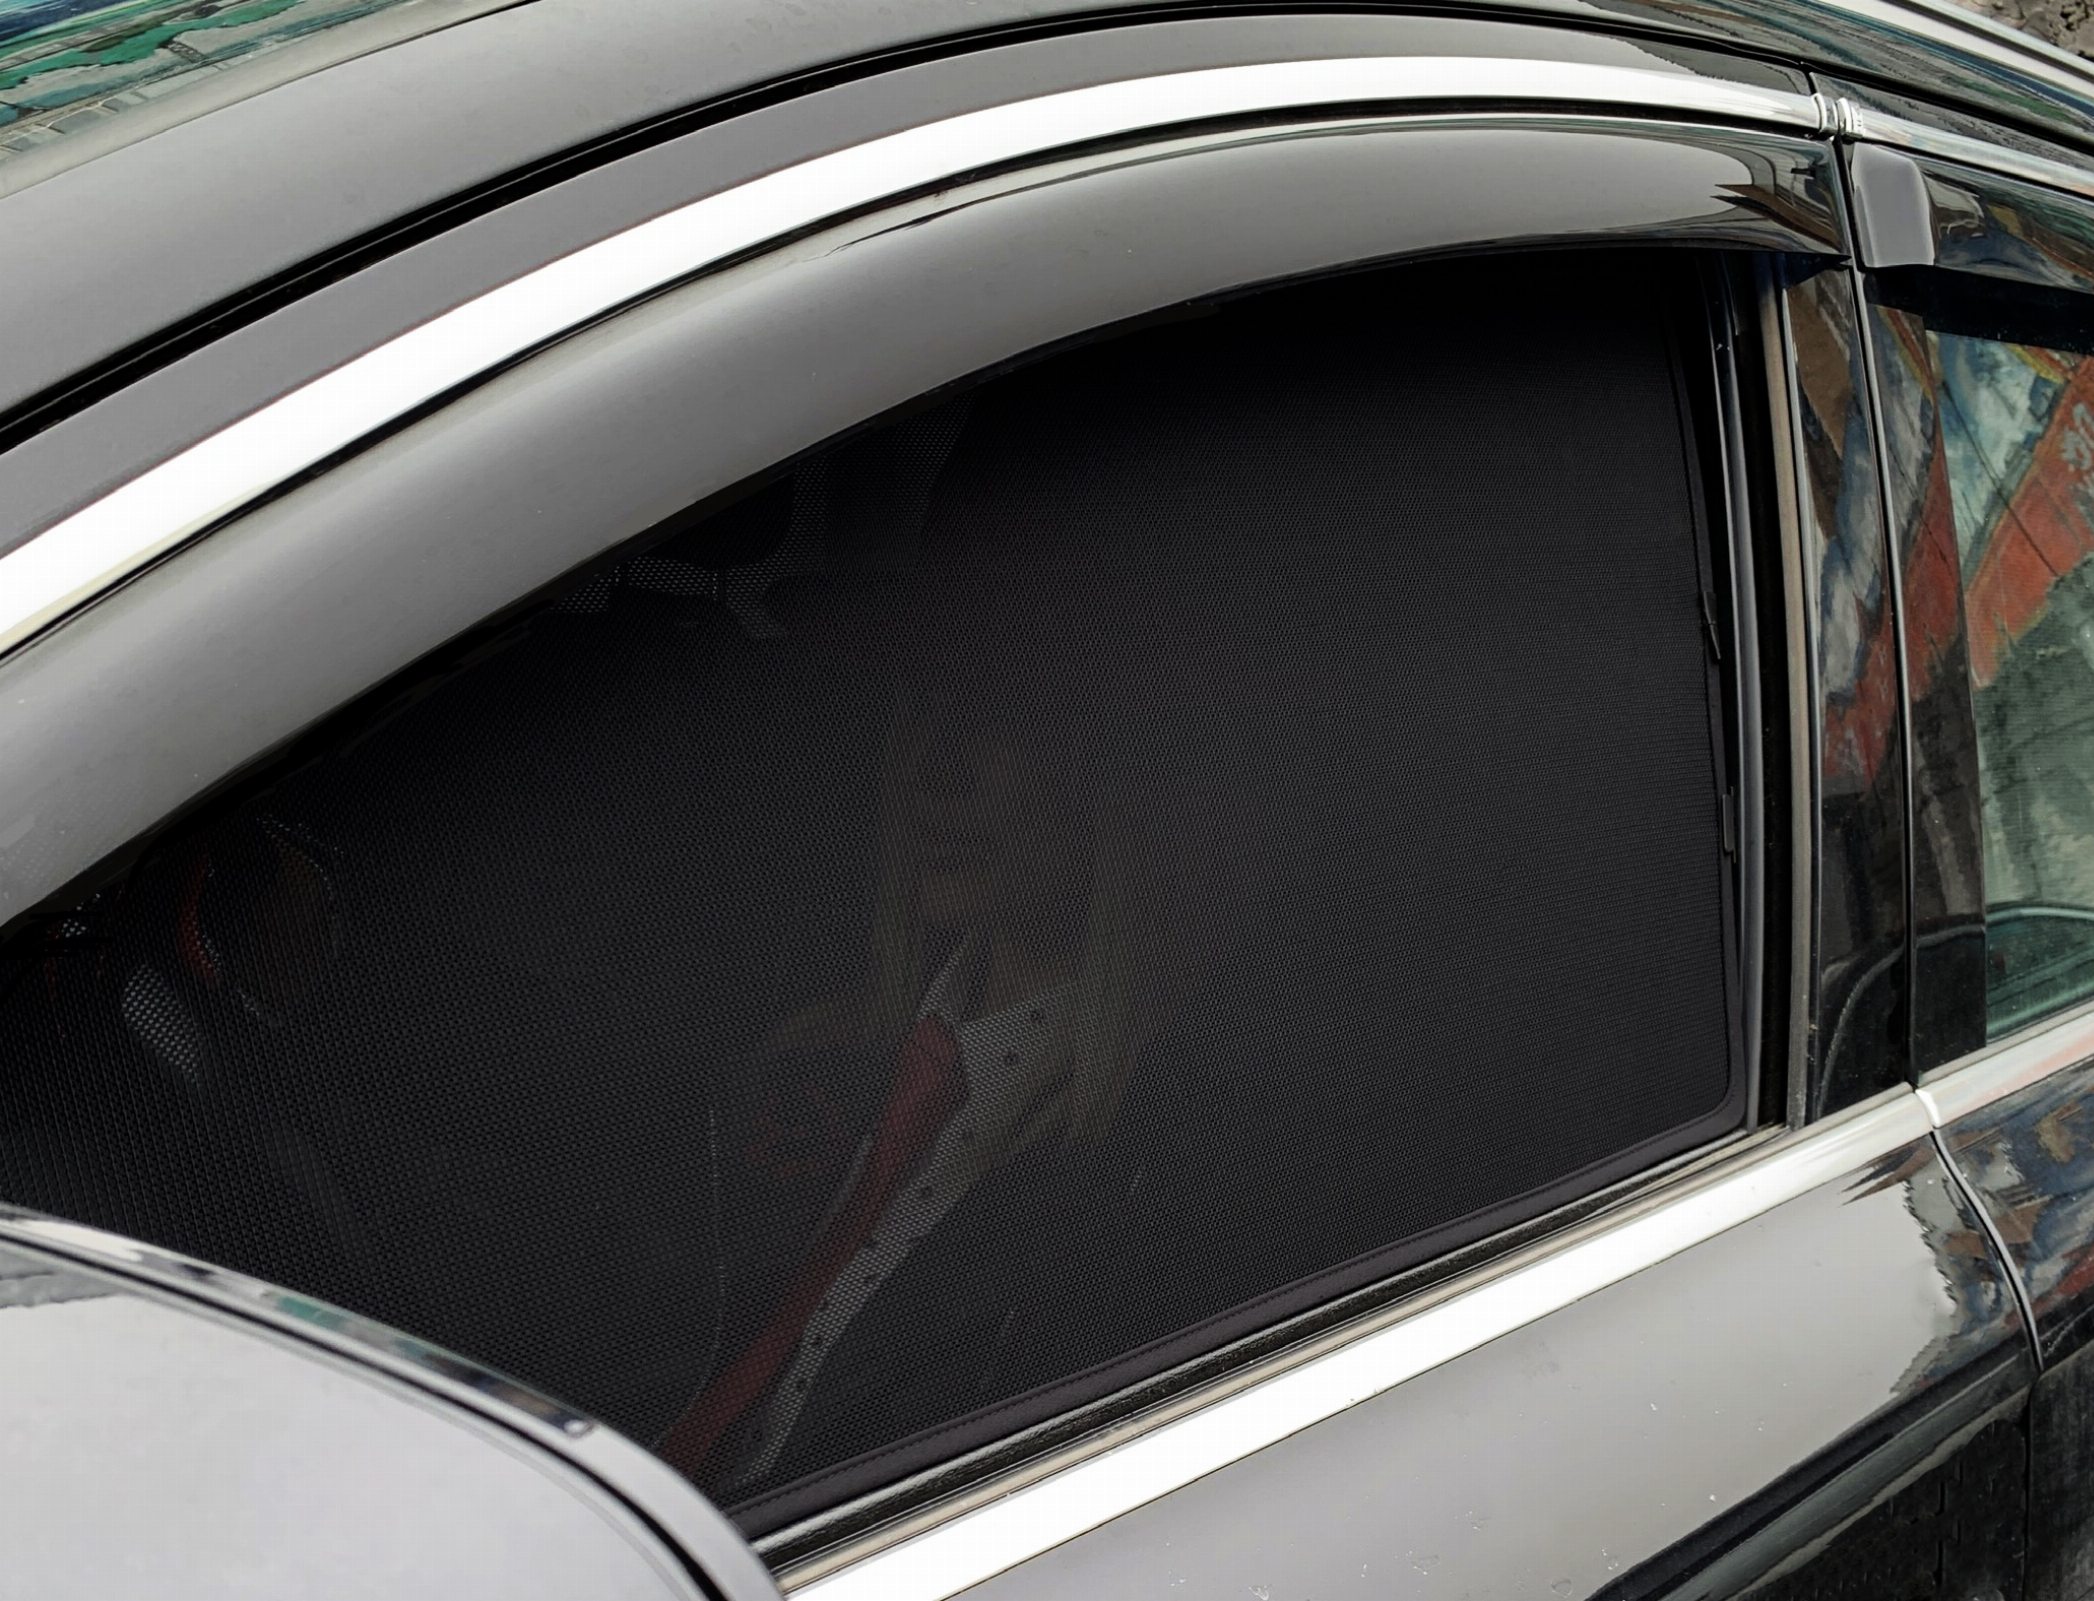  Каркасные автомобильные шторки - ВАЗ НИВА 2121 (1993-наст.время) без пласт. треугольника у зеркала, ЗВ без выреза под стоп-сигнал Внедорожник 3 дв. Комплект на задние форточки PREMIUM - фото